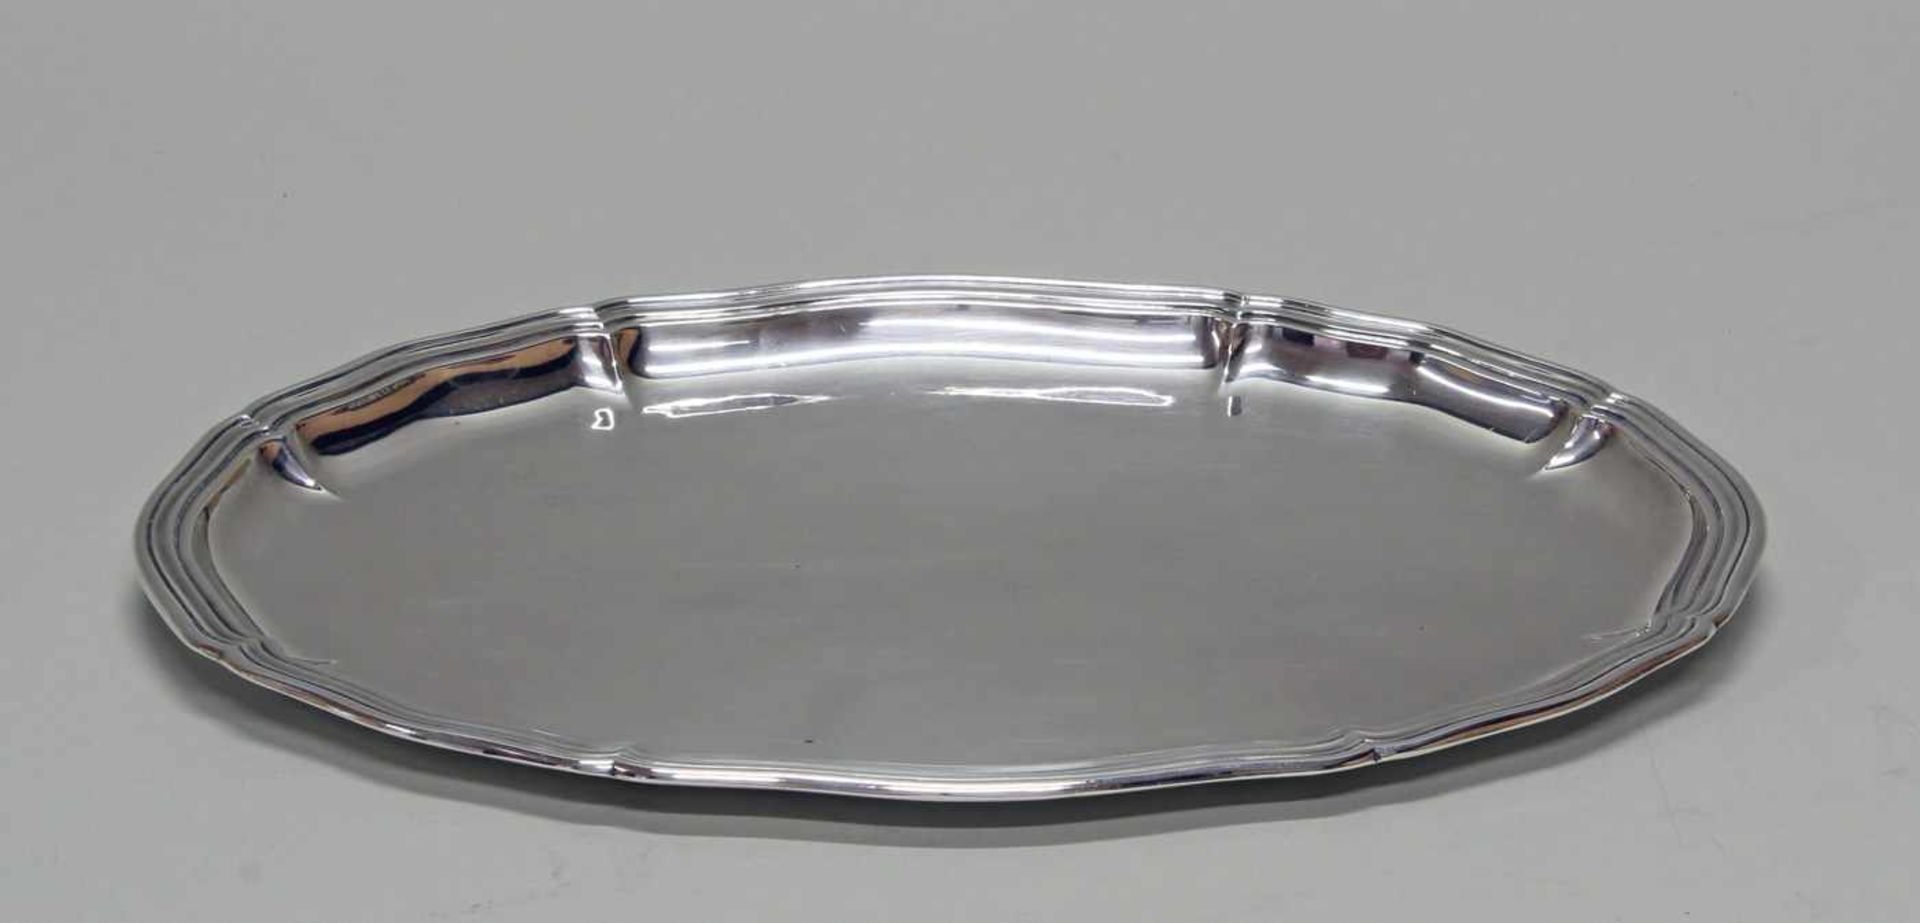 Vorlegeplatte, Silber 800, Gbr. Kühn, oval, passig-geschweifter Profilrand, umseitig datierte - Image 2 of 4